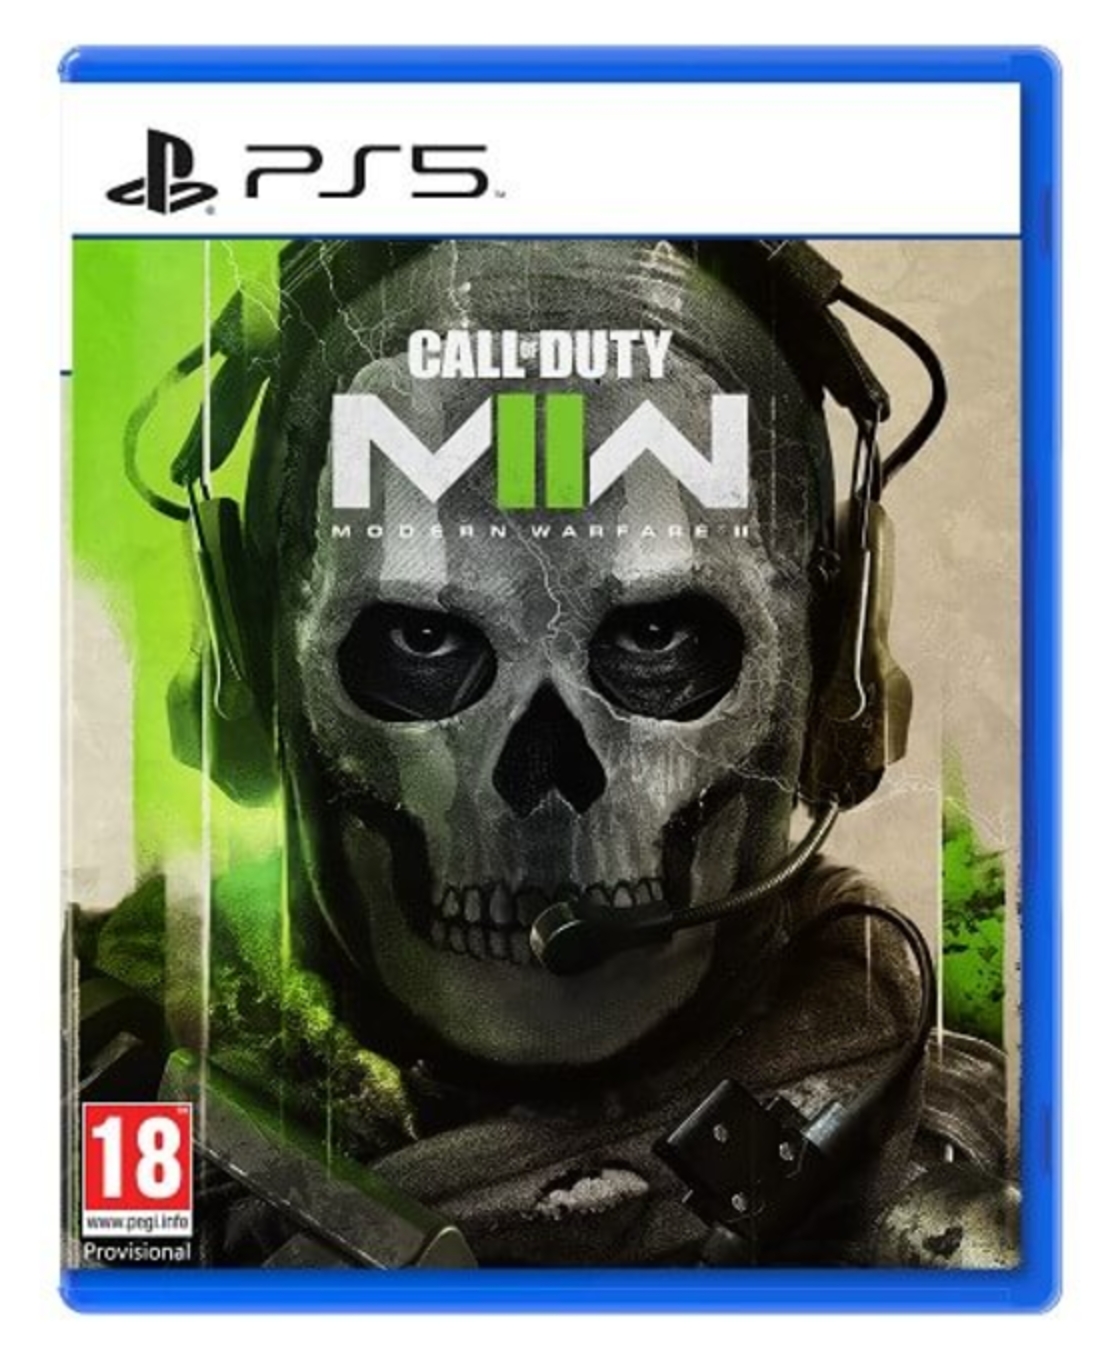 Call of Duty Modern Warfare II - PS5 - הזמנה מוקדמת